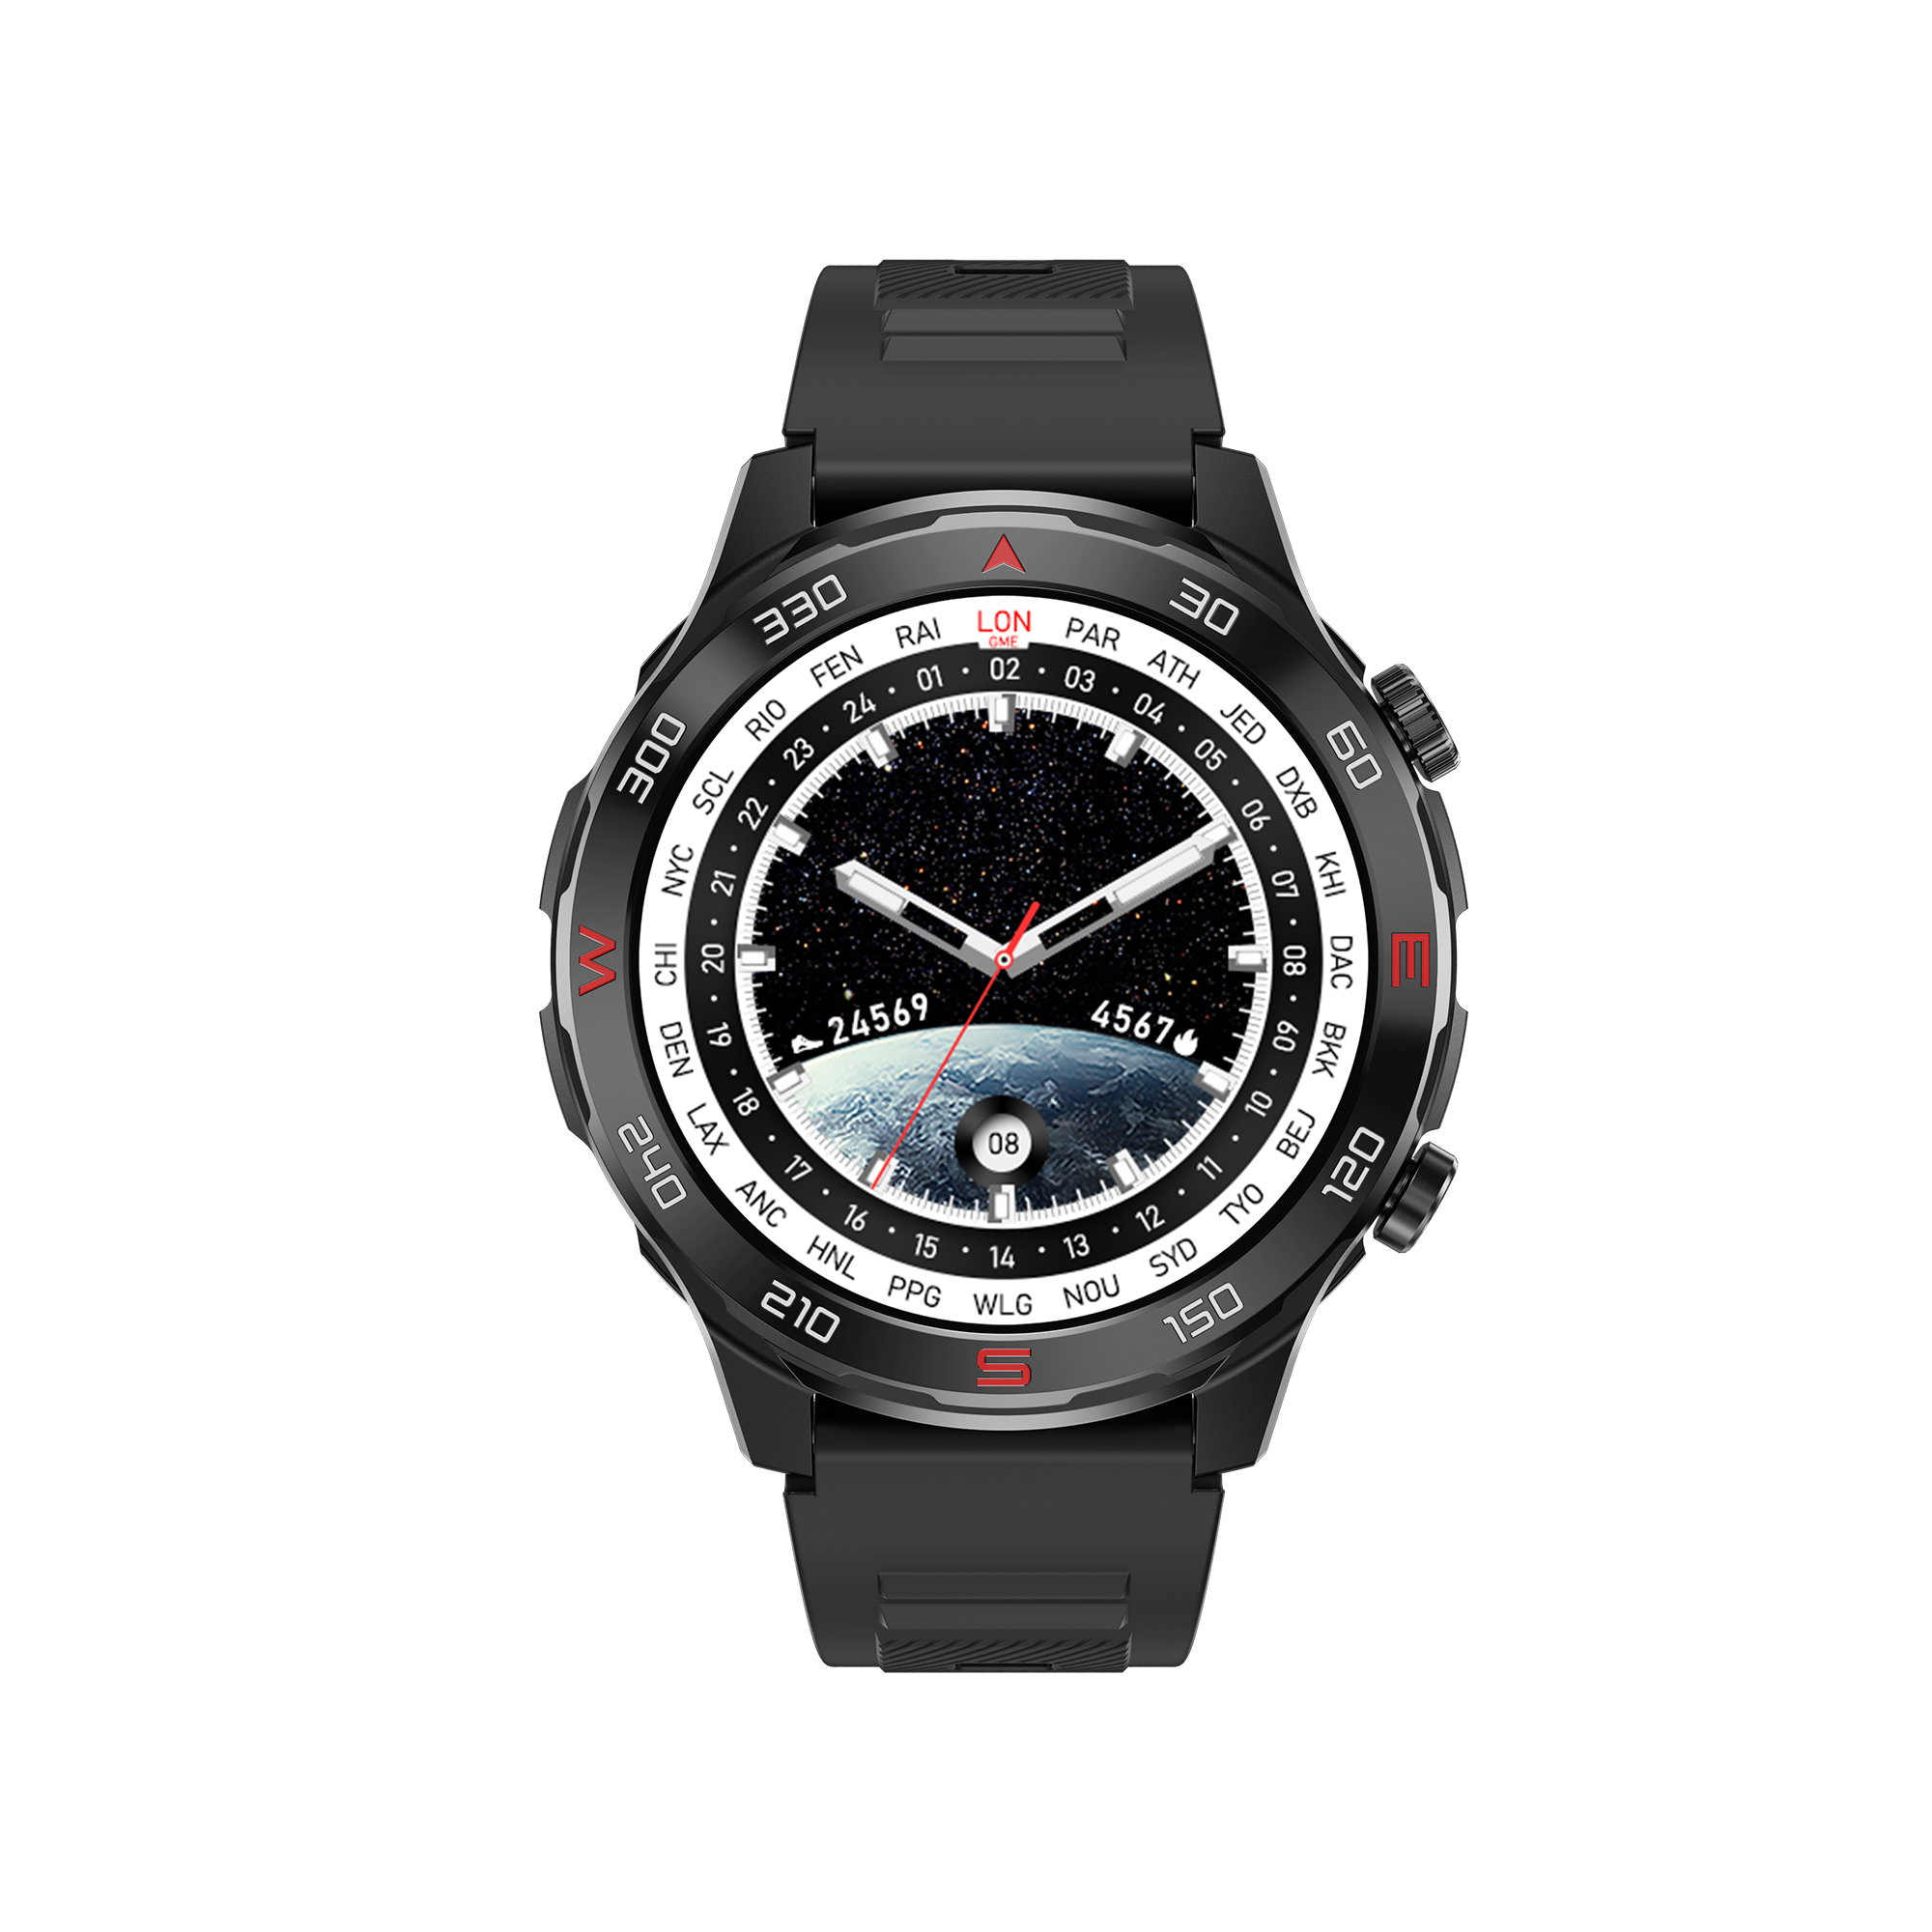 O-D03 smartwatch